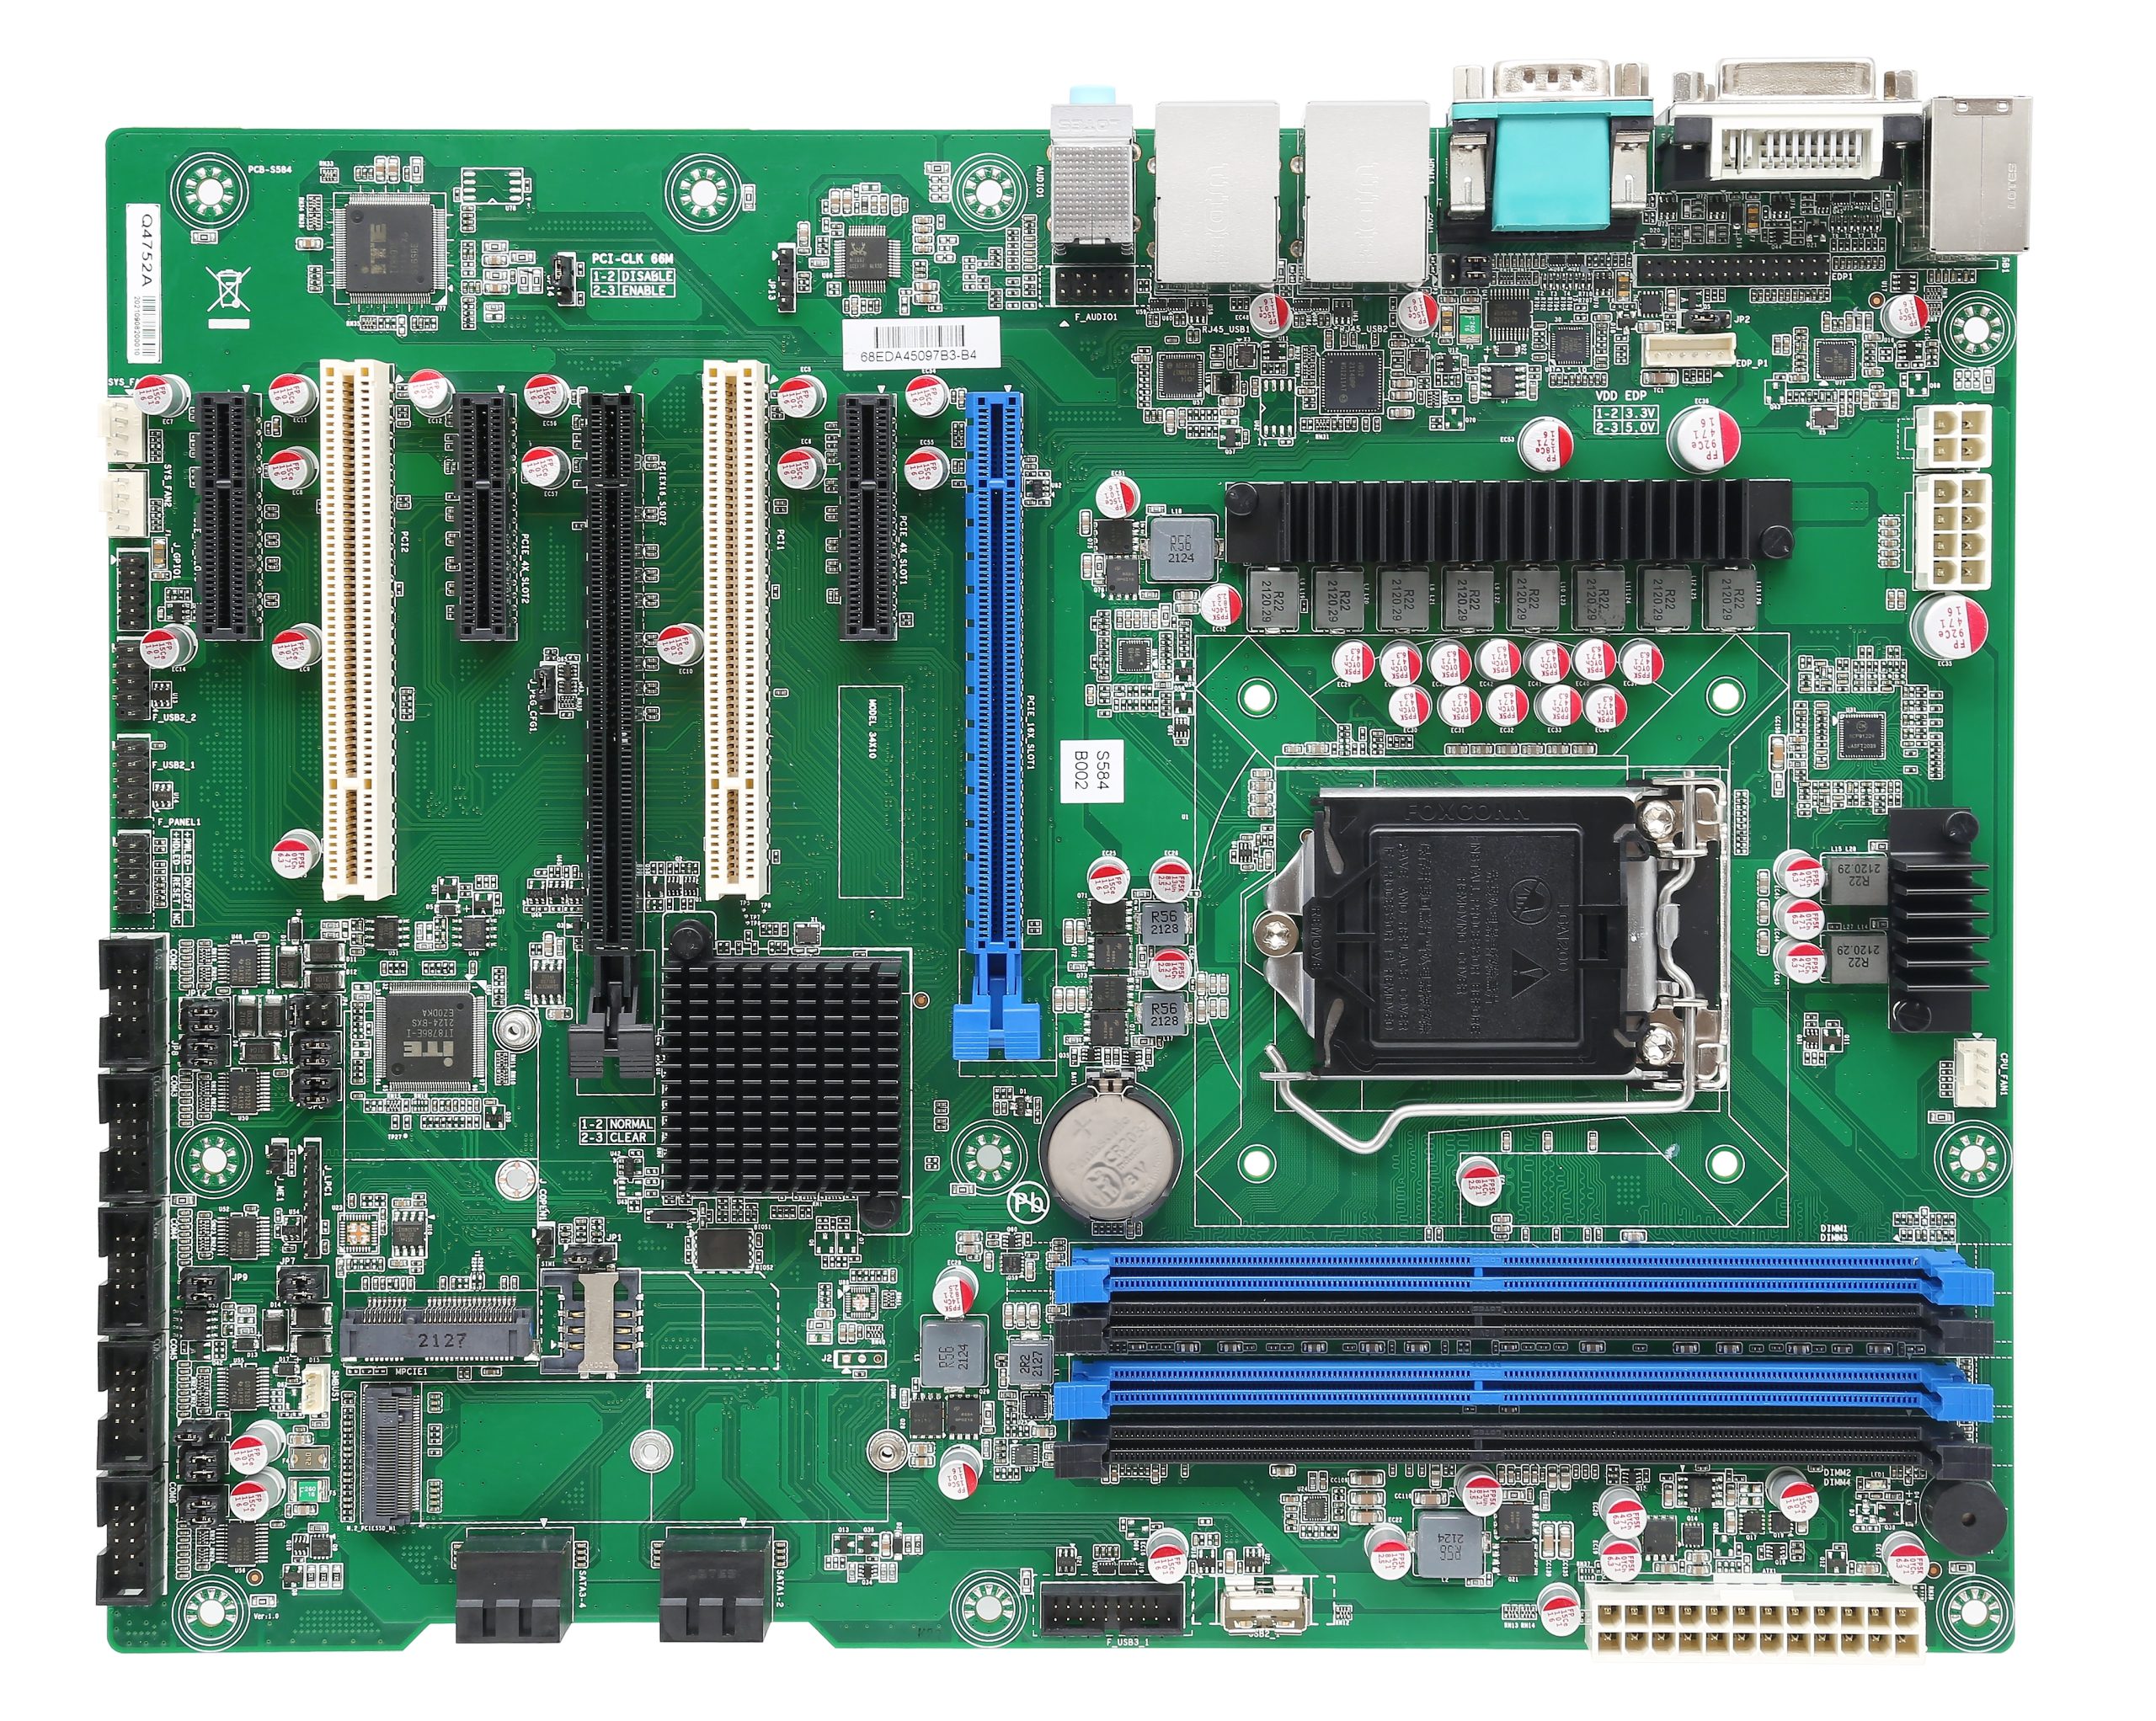 DMB-AQ670 Industrial Motherboard with Intel®12/13th Gen Core™ i3/i5/i7/i9 CPU, Q670 Chipset, 2× PCIeX16, 4× PCIeX4, 1× PCI 6× COM, 13× USB, 2× LAN